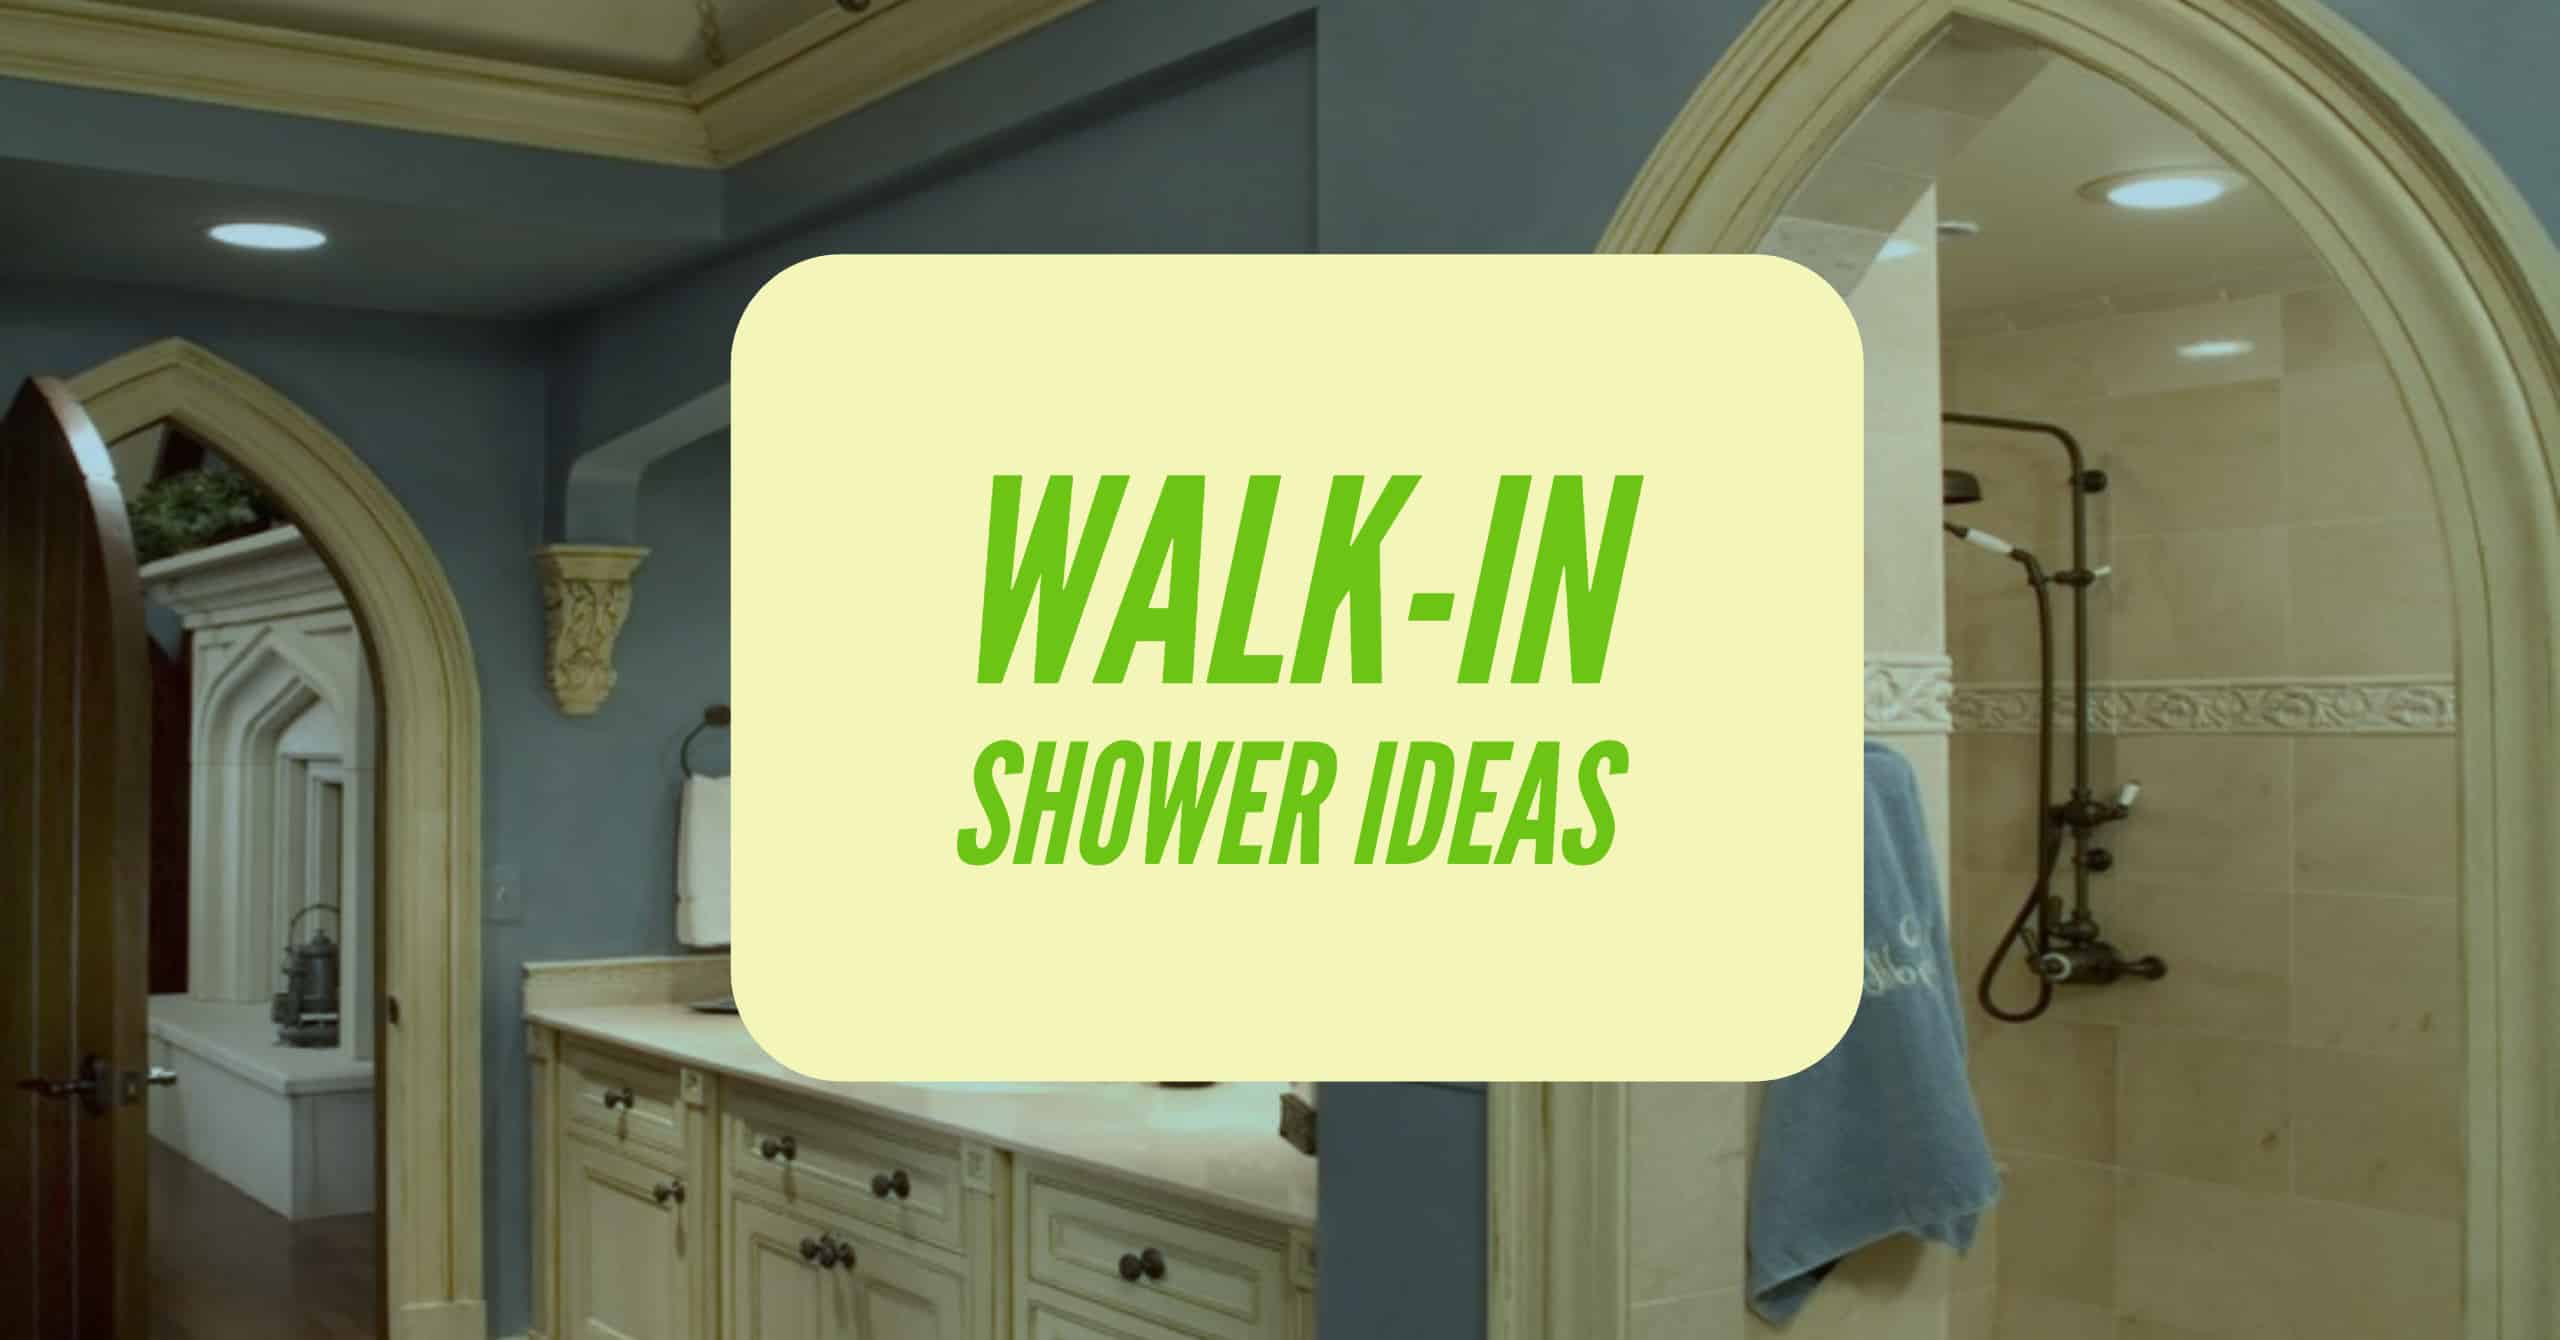 Walk-in Shower Ideas